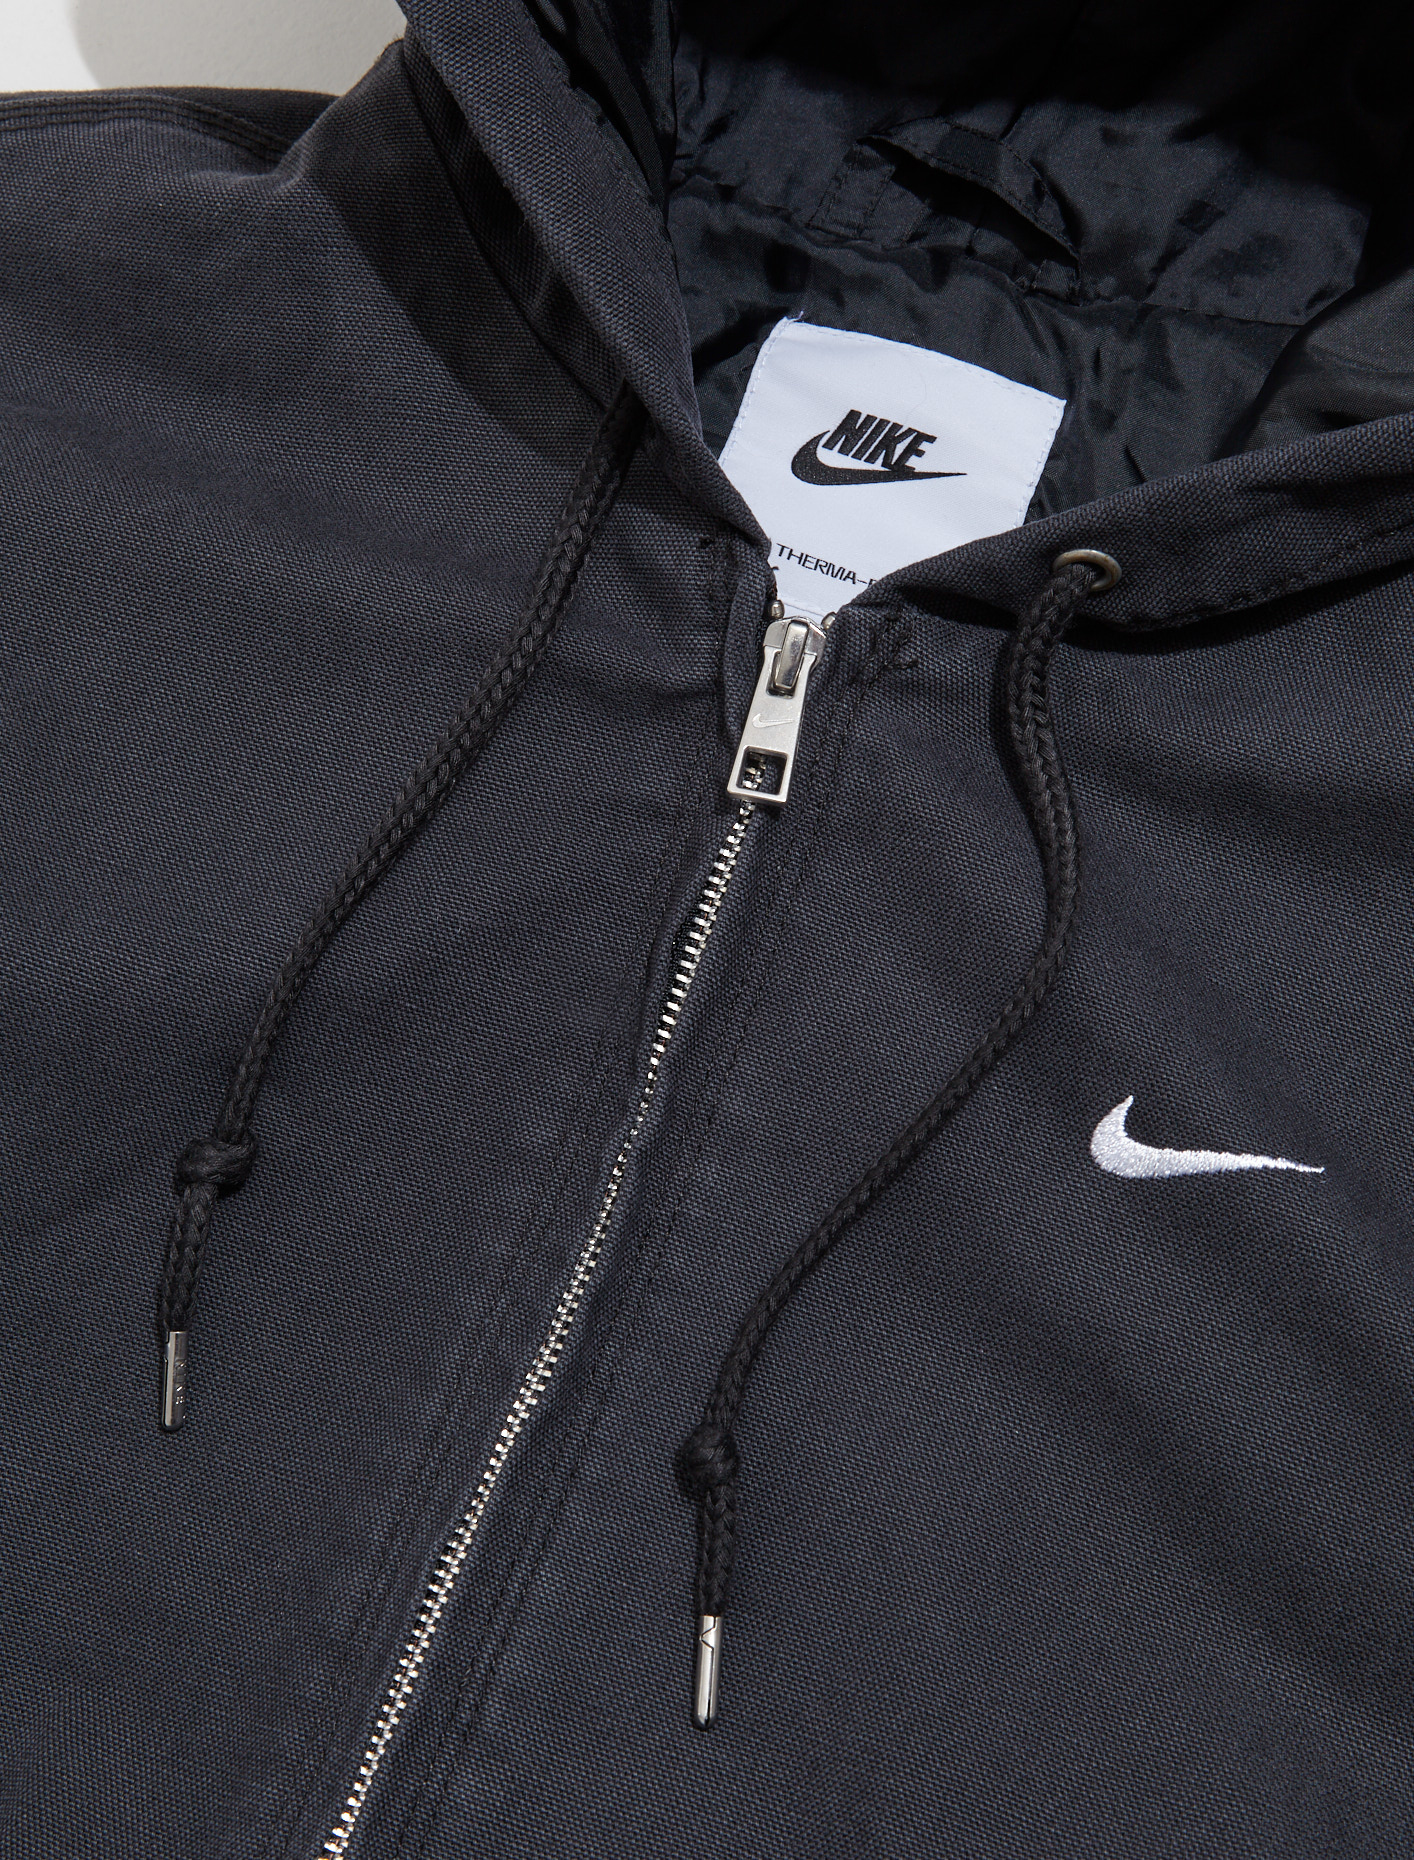 Nike Padded Hooded Jacket in Off-Noir | Voo Store Berlin | Worldwide ...